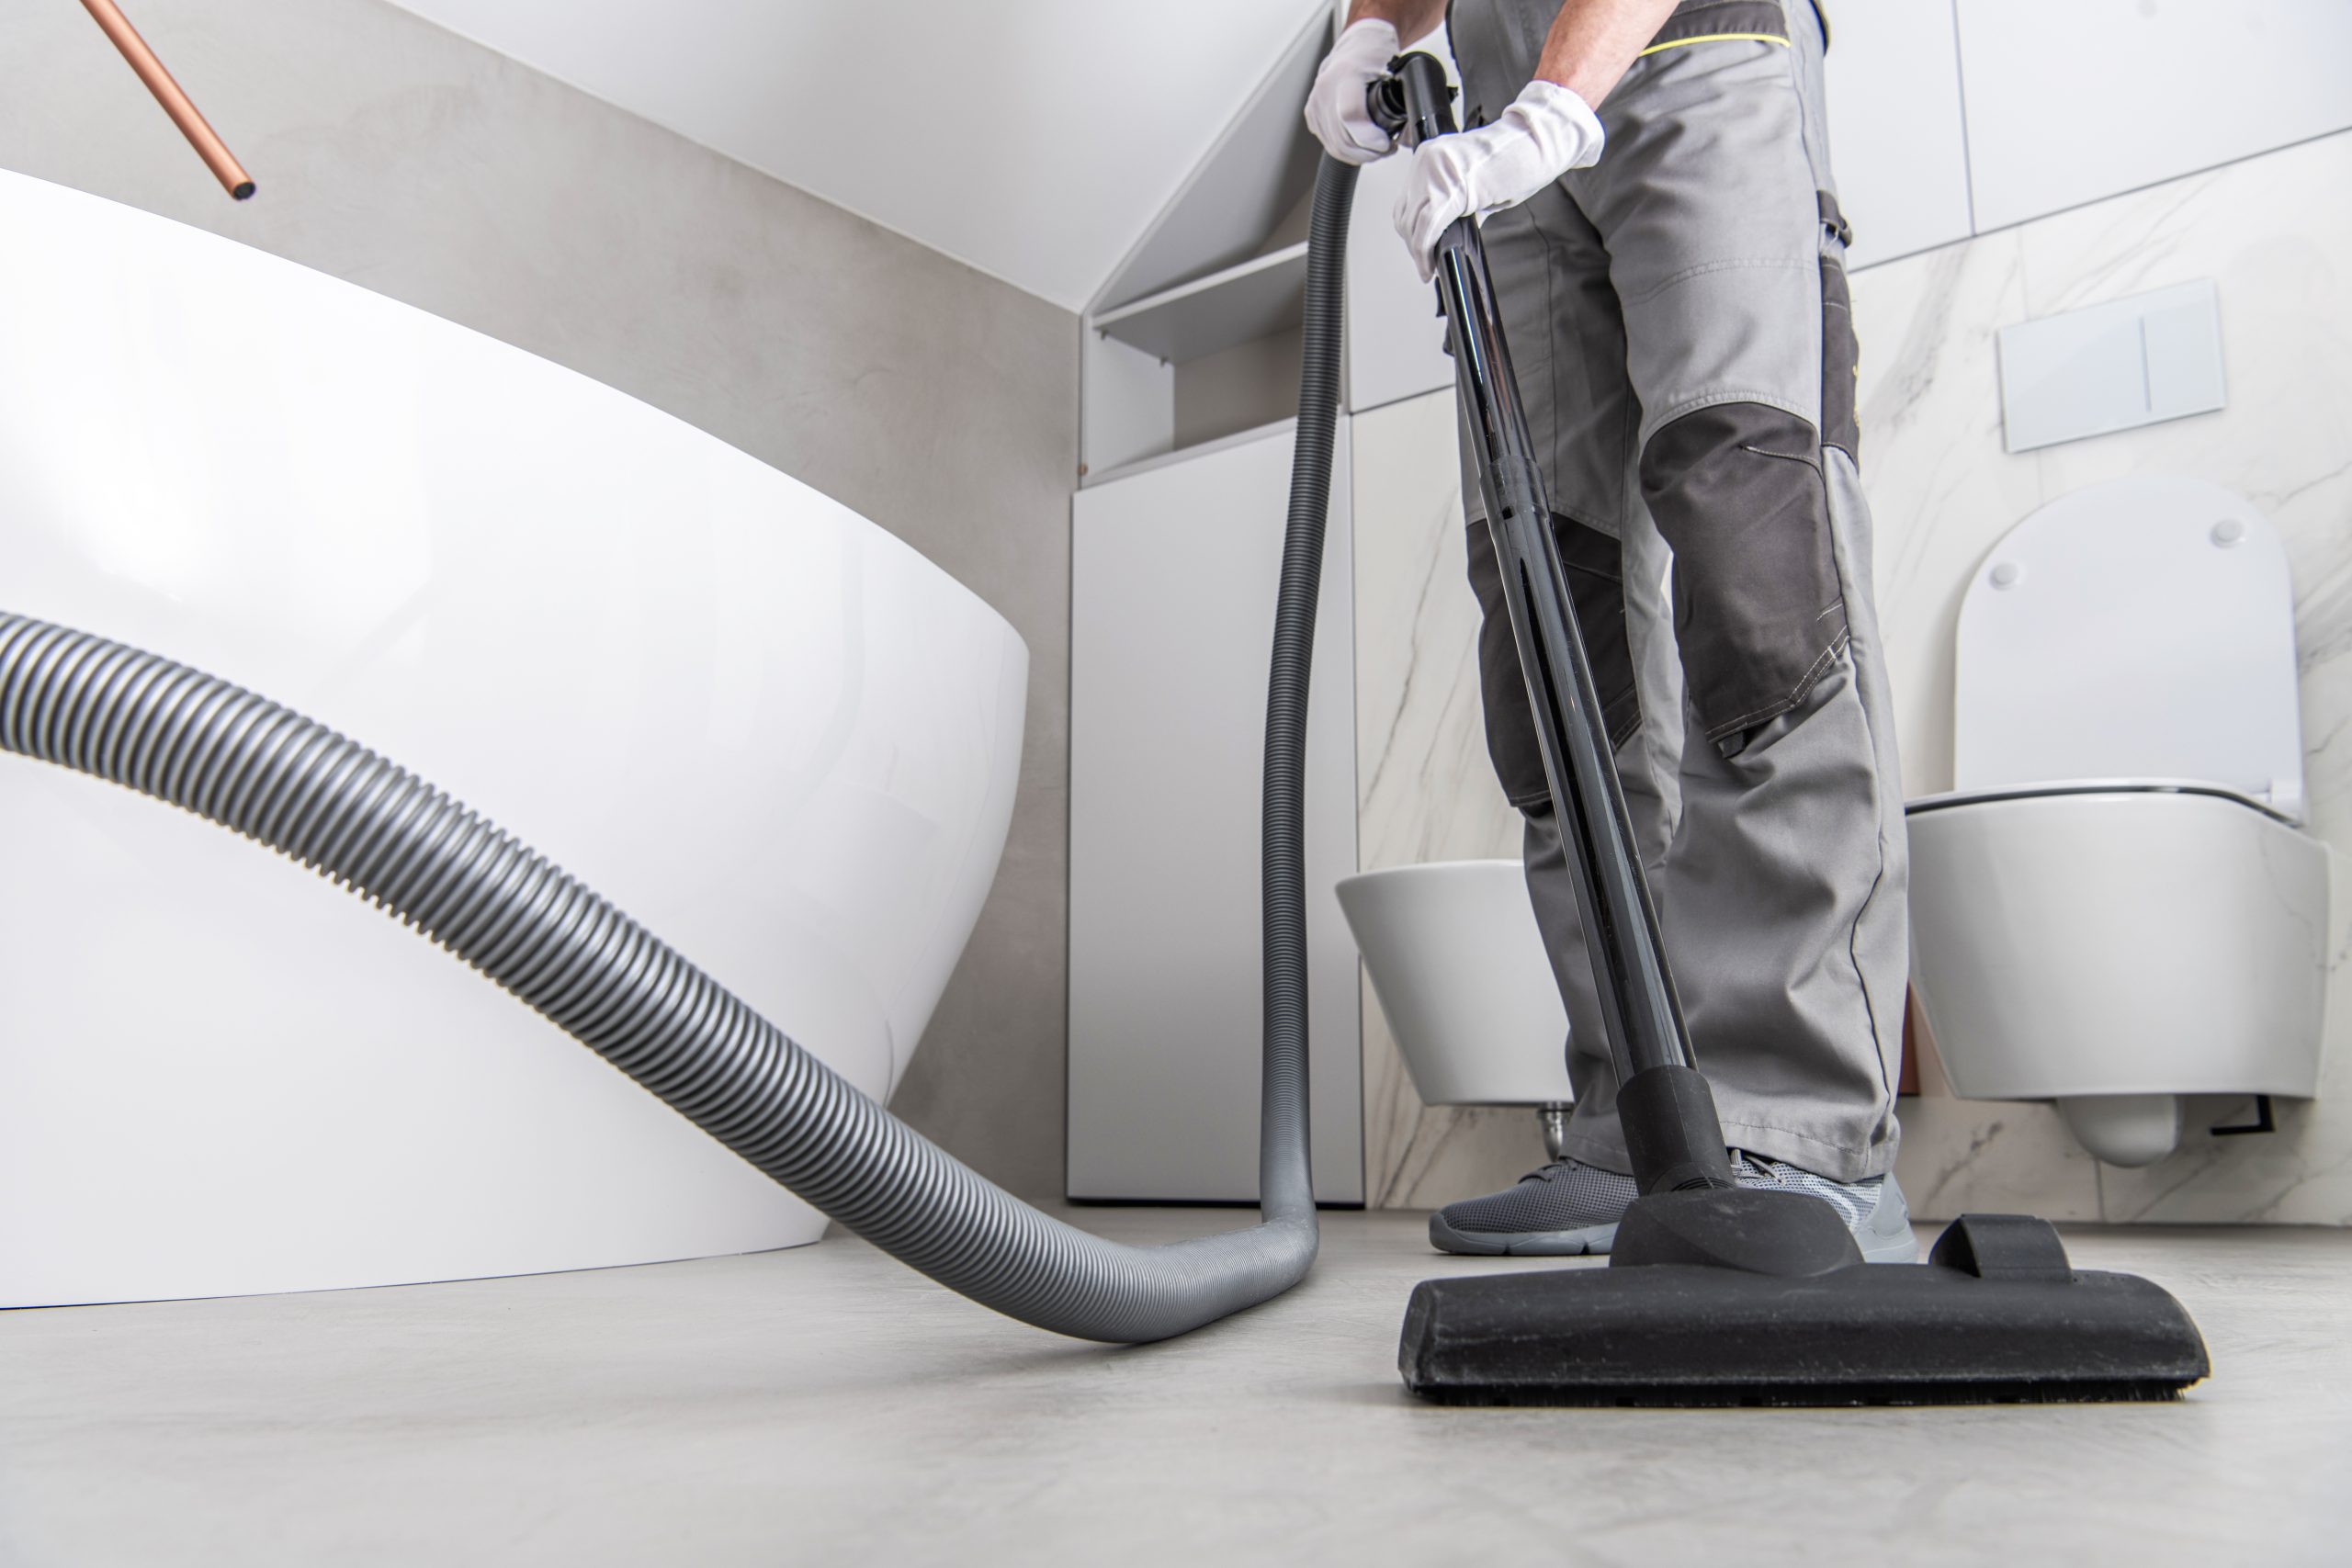 Man Vacuuming White Tile Floor In Bathroom 2022 12 16 11 49 47 Utc